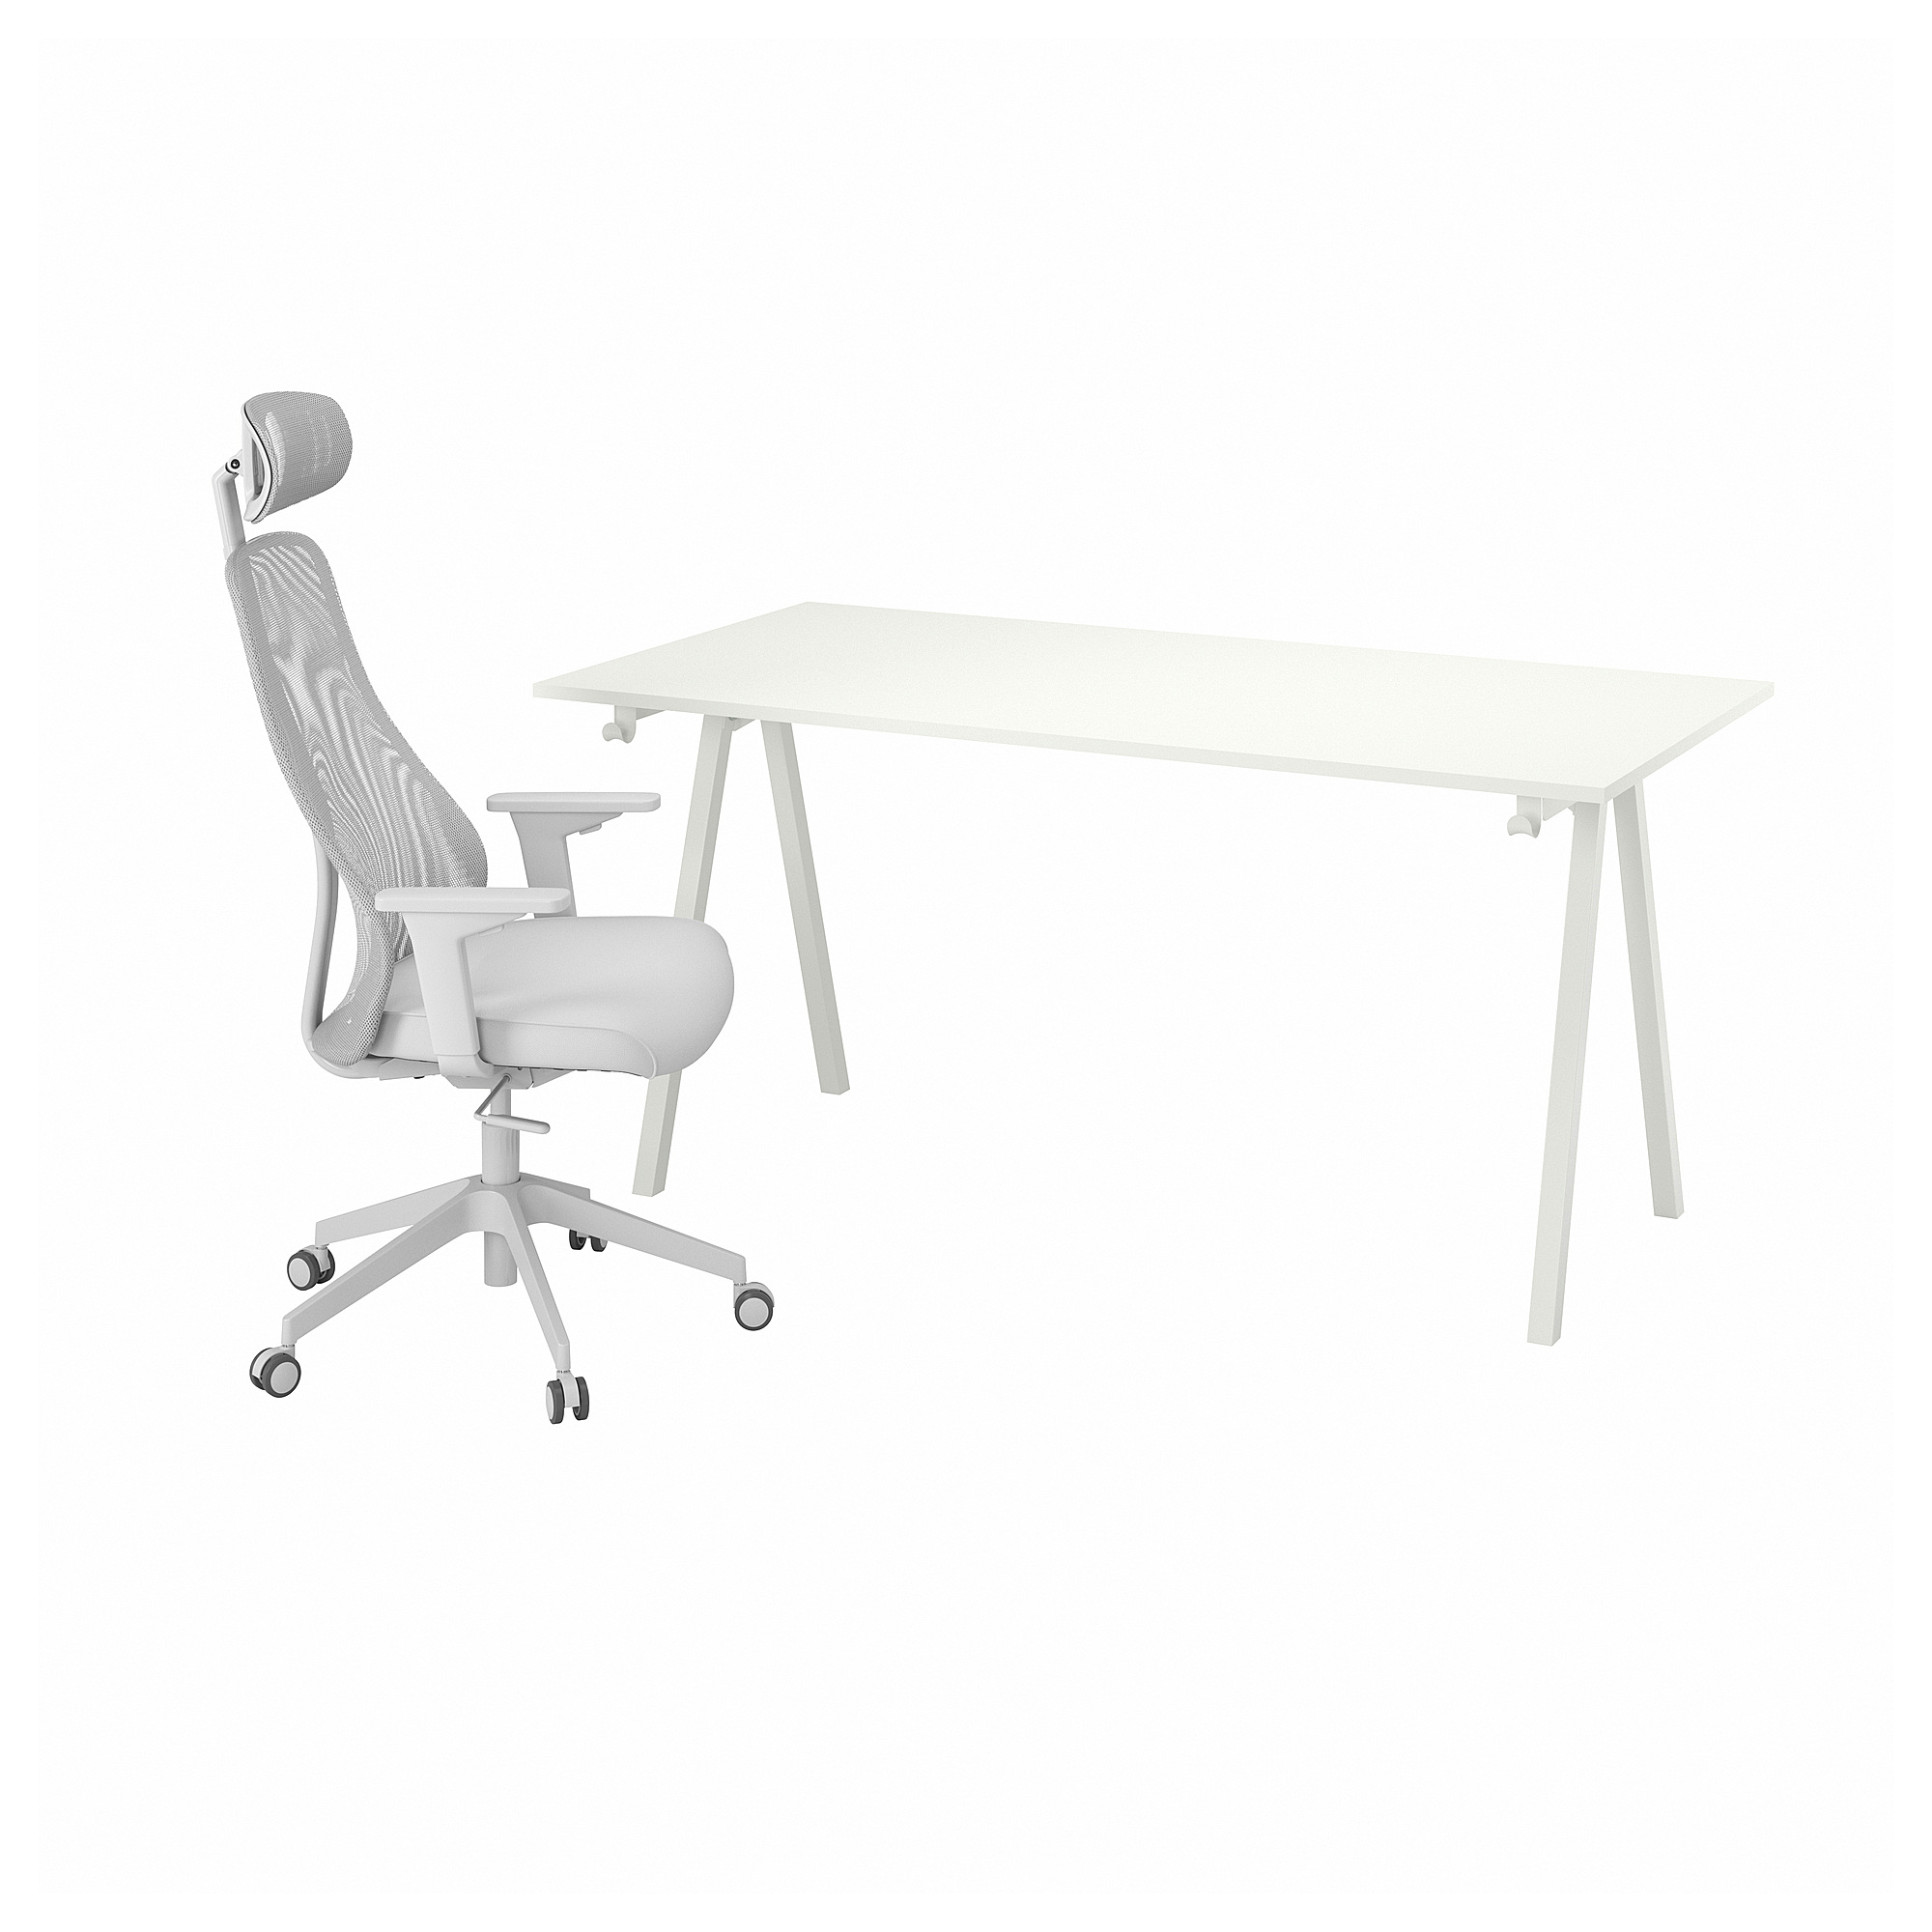 TROTTEN/MATCHSPEL desk and chair